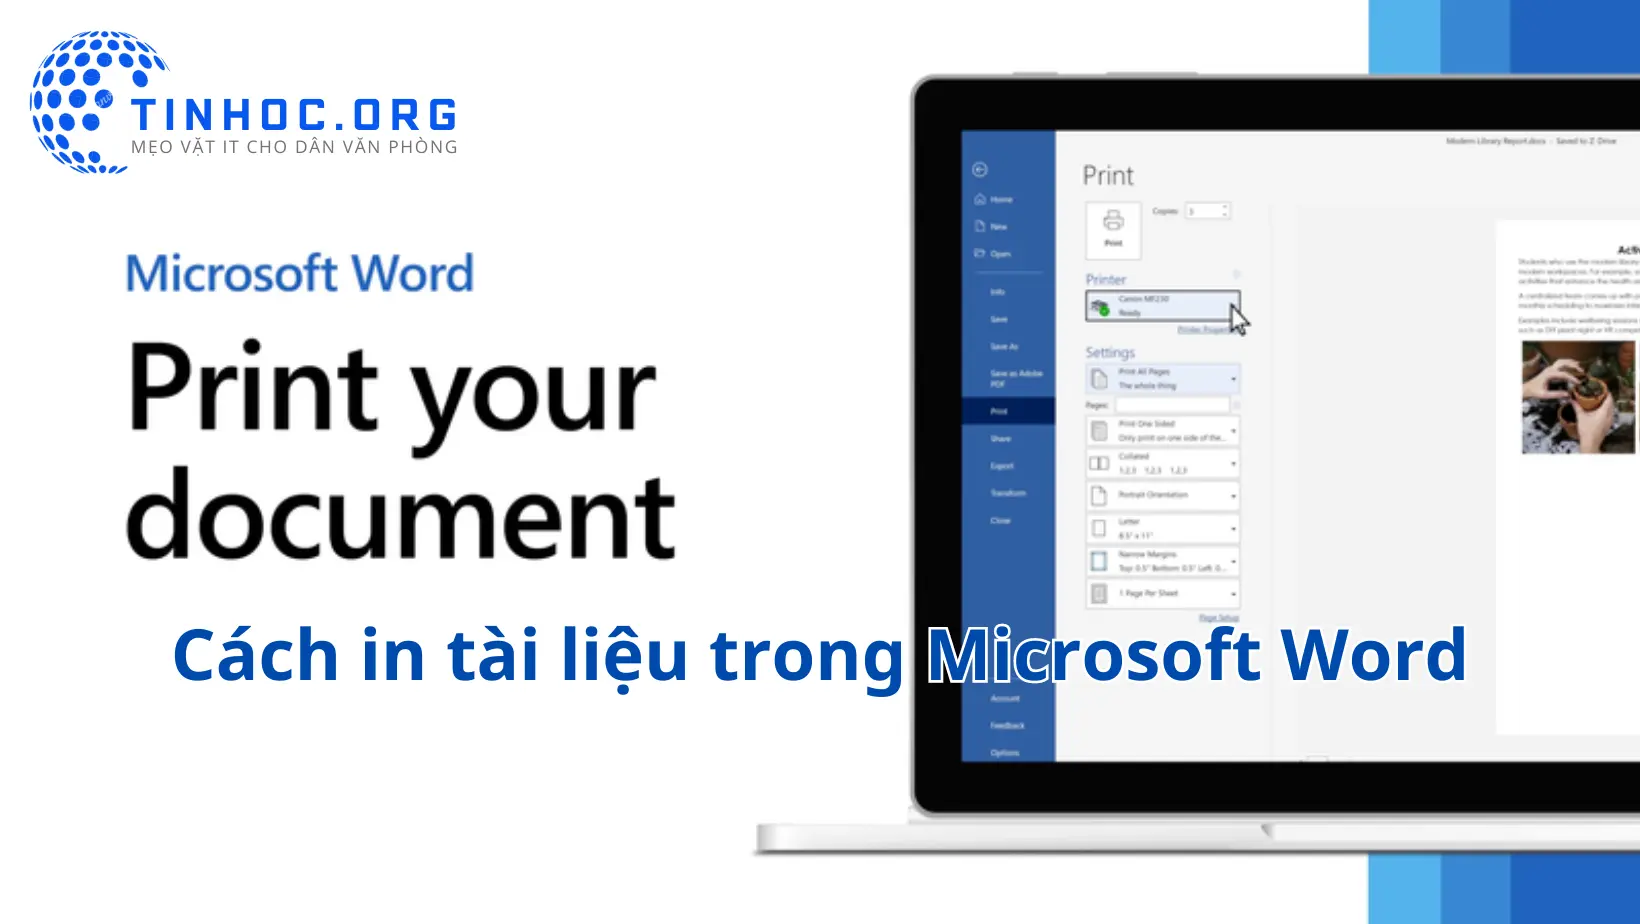 Hướng dẫn cách in tài liệu trong Microsoft Word, bao gồm các bước cơ bản và các tùy chọn in nâng cao.